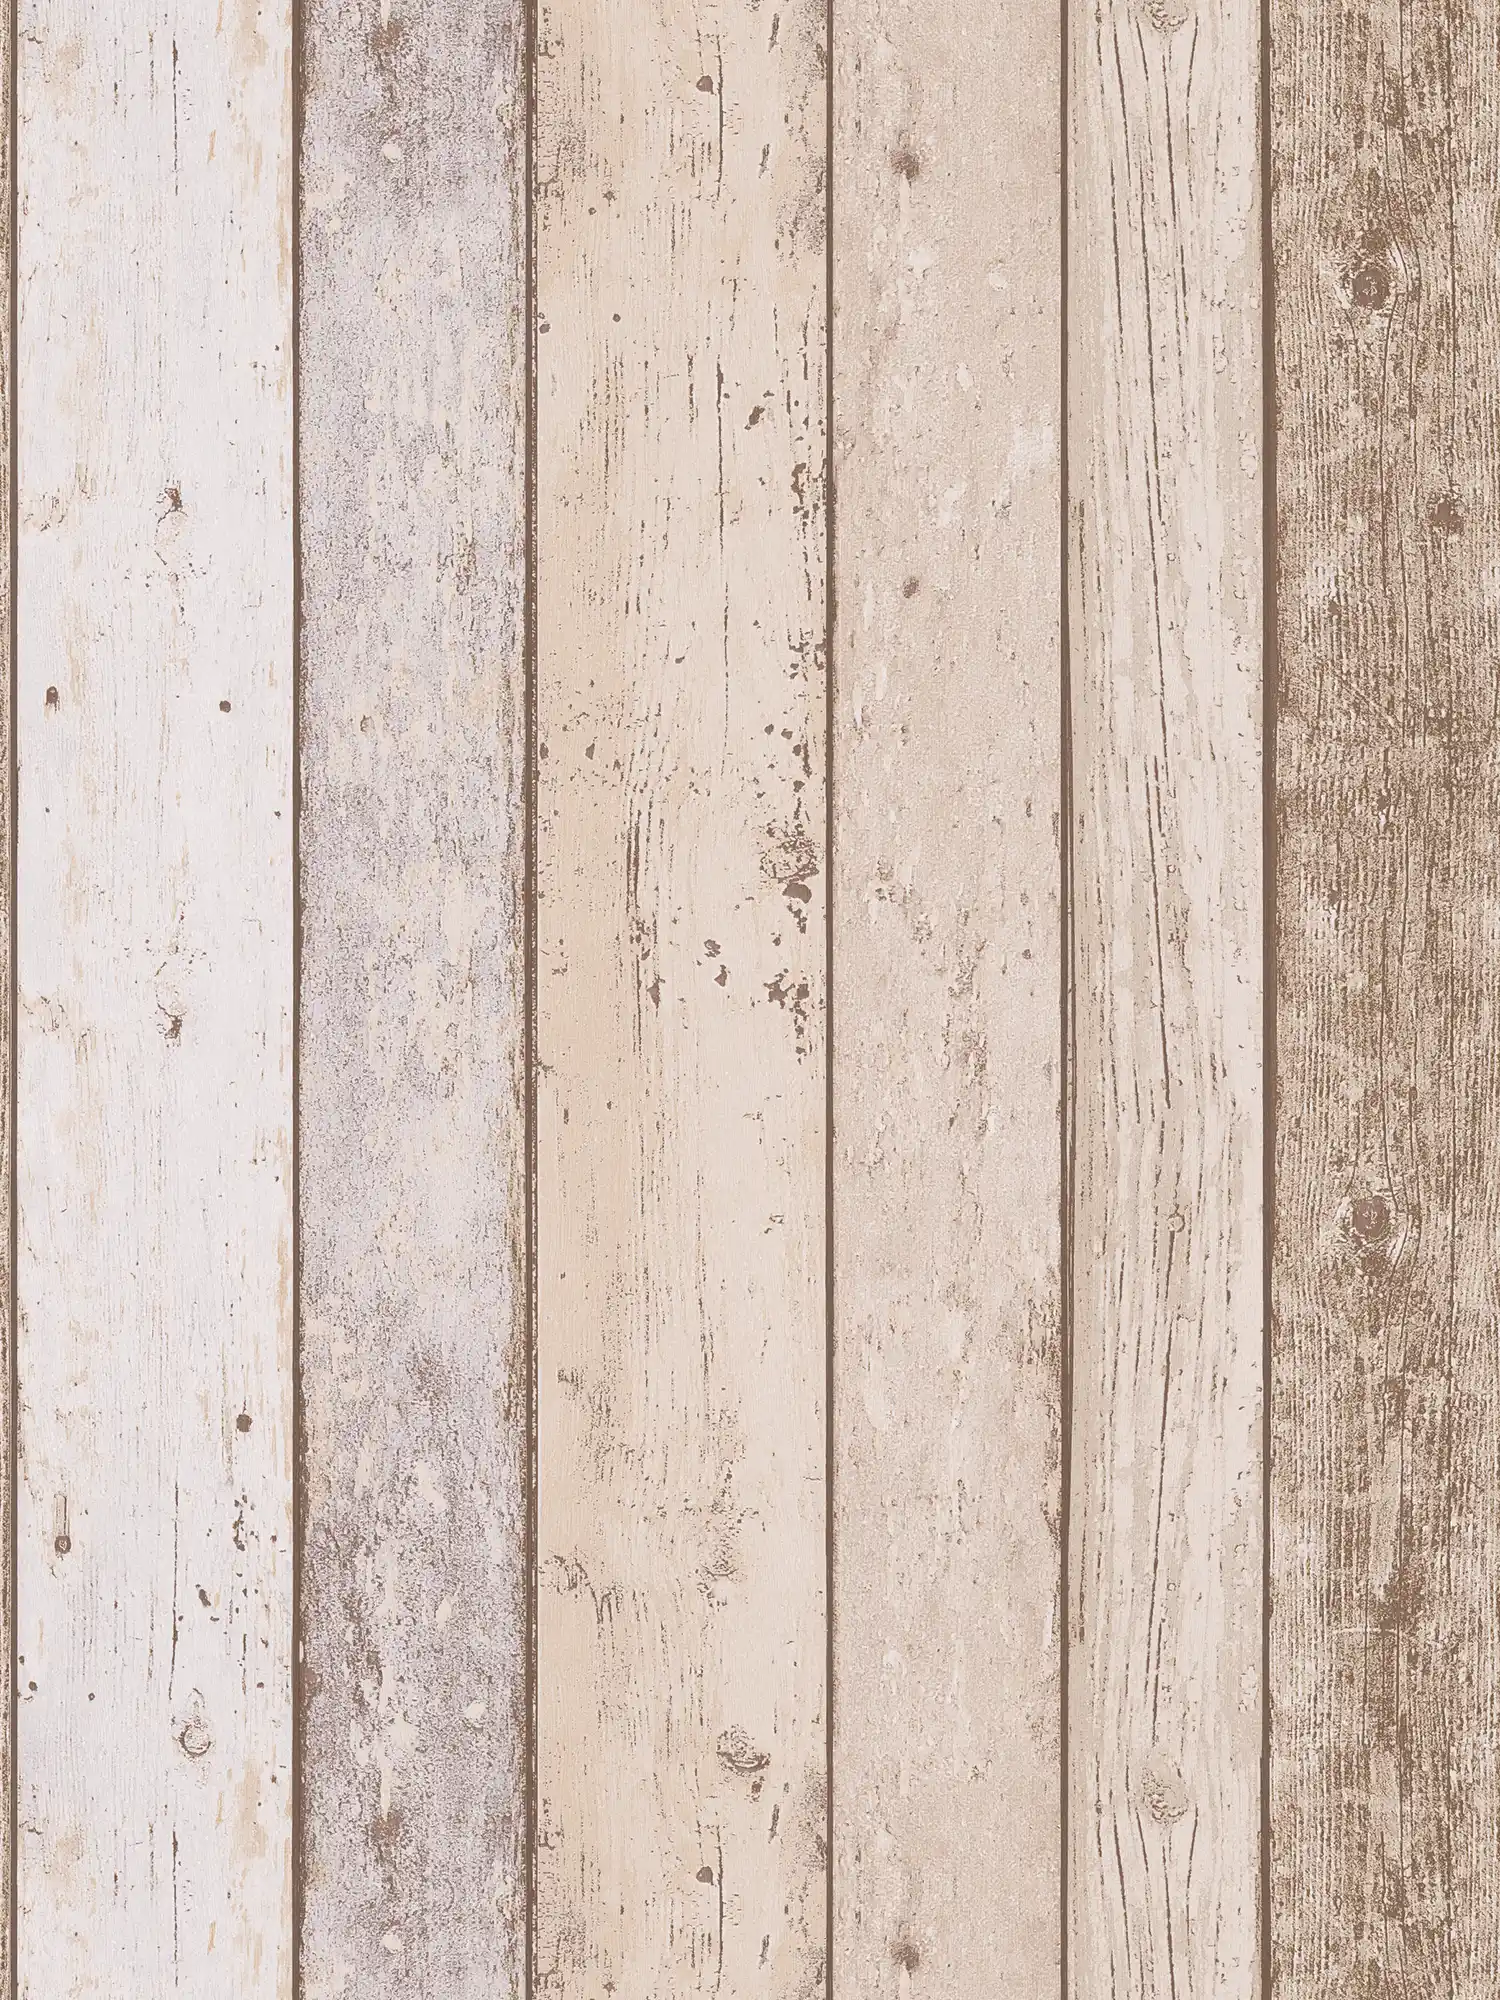 Tablas de papel pintado de madera en estilo retro y aspecto usado - marrón, beige
